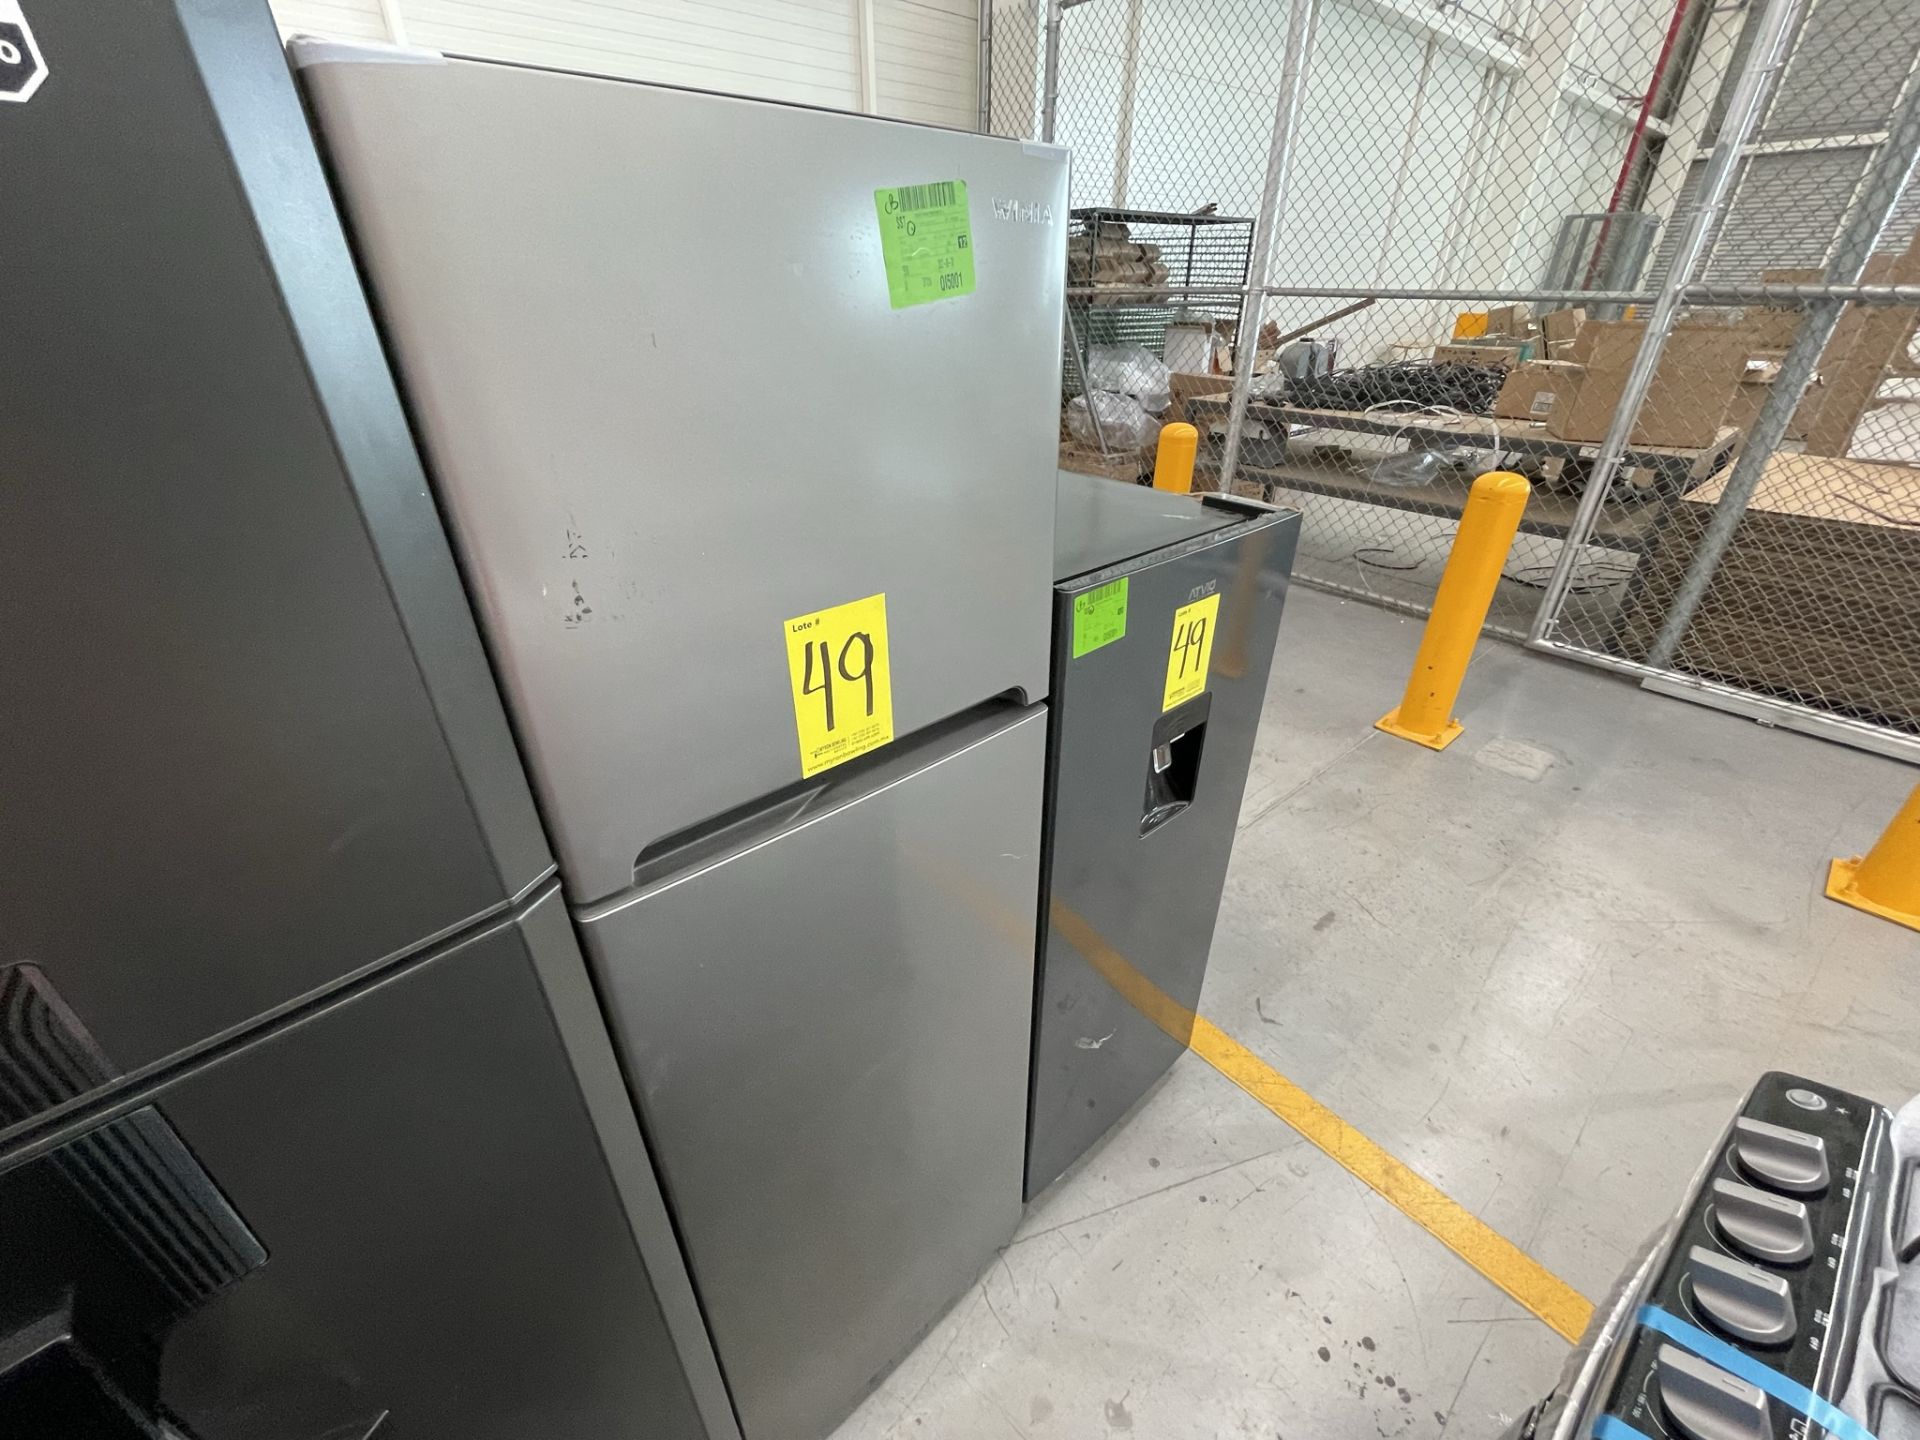 Lote de 2 Refrigeradores contiene: 1 Refrigerador Marca WINIA, Modelo DRF25210GN, Serie 370028, Col - Image 3 of 28